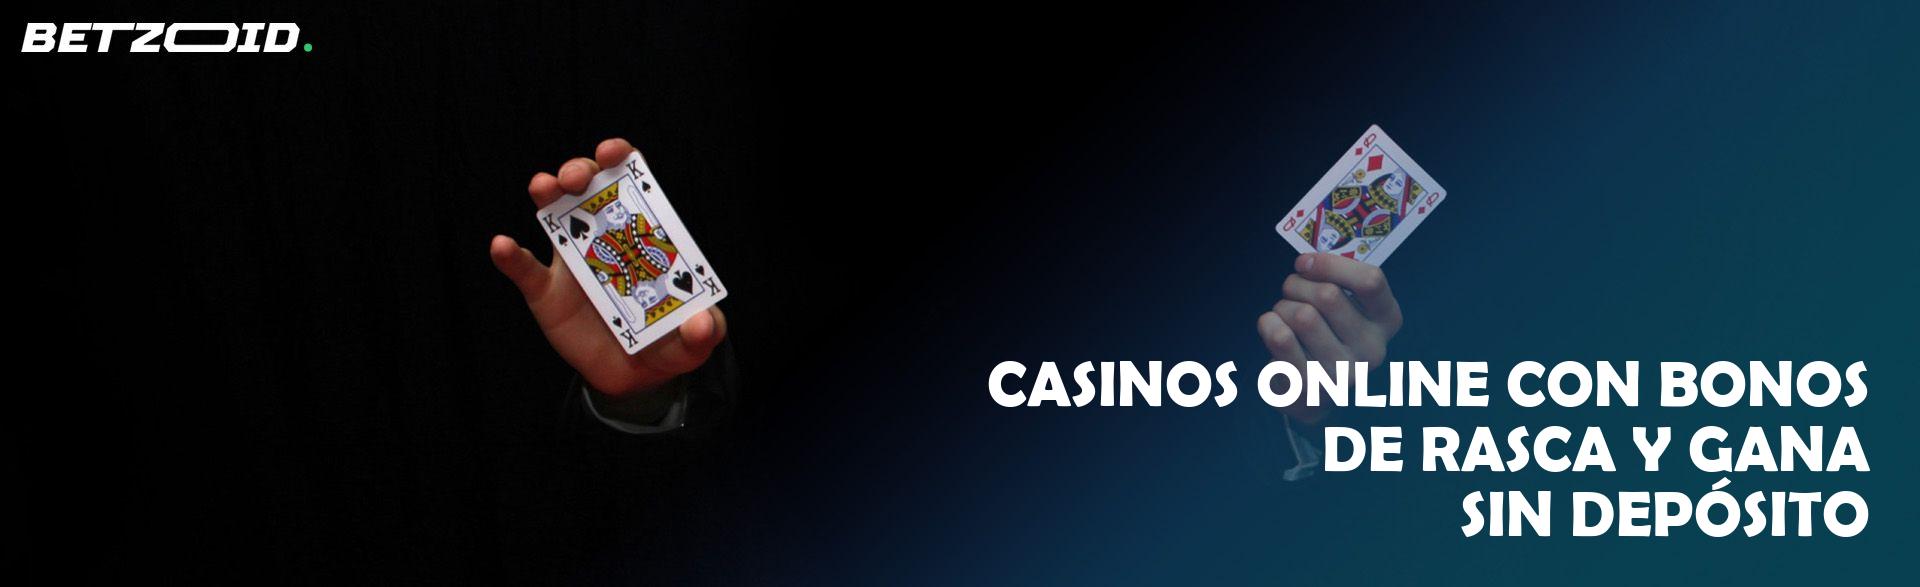 Experimenta bonos emocionantes en casinos en línea en español